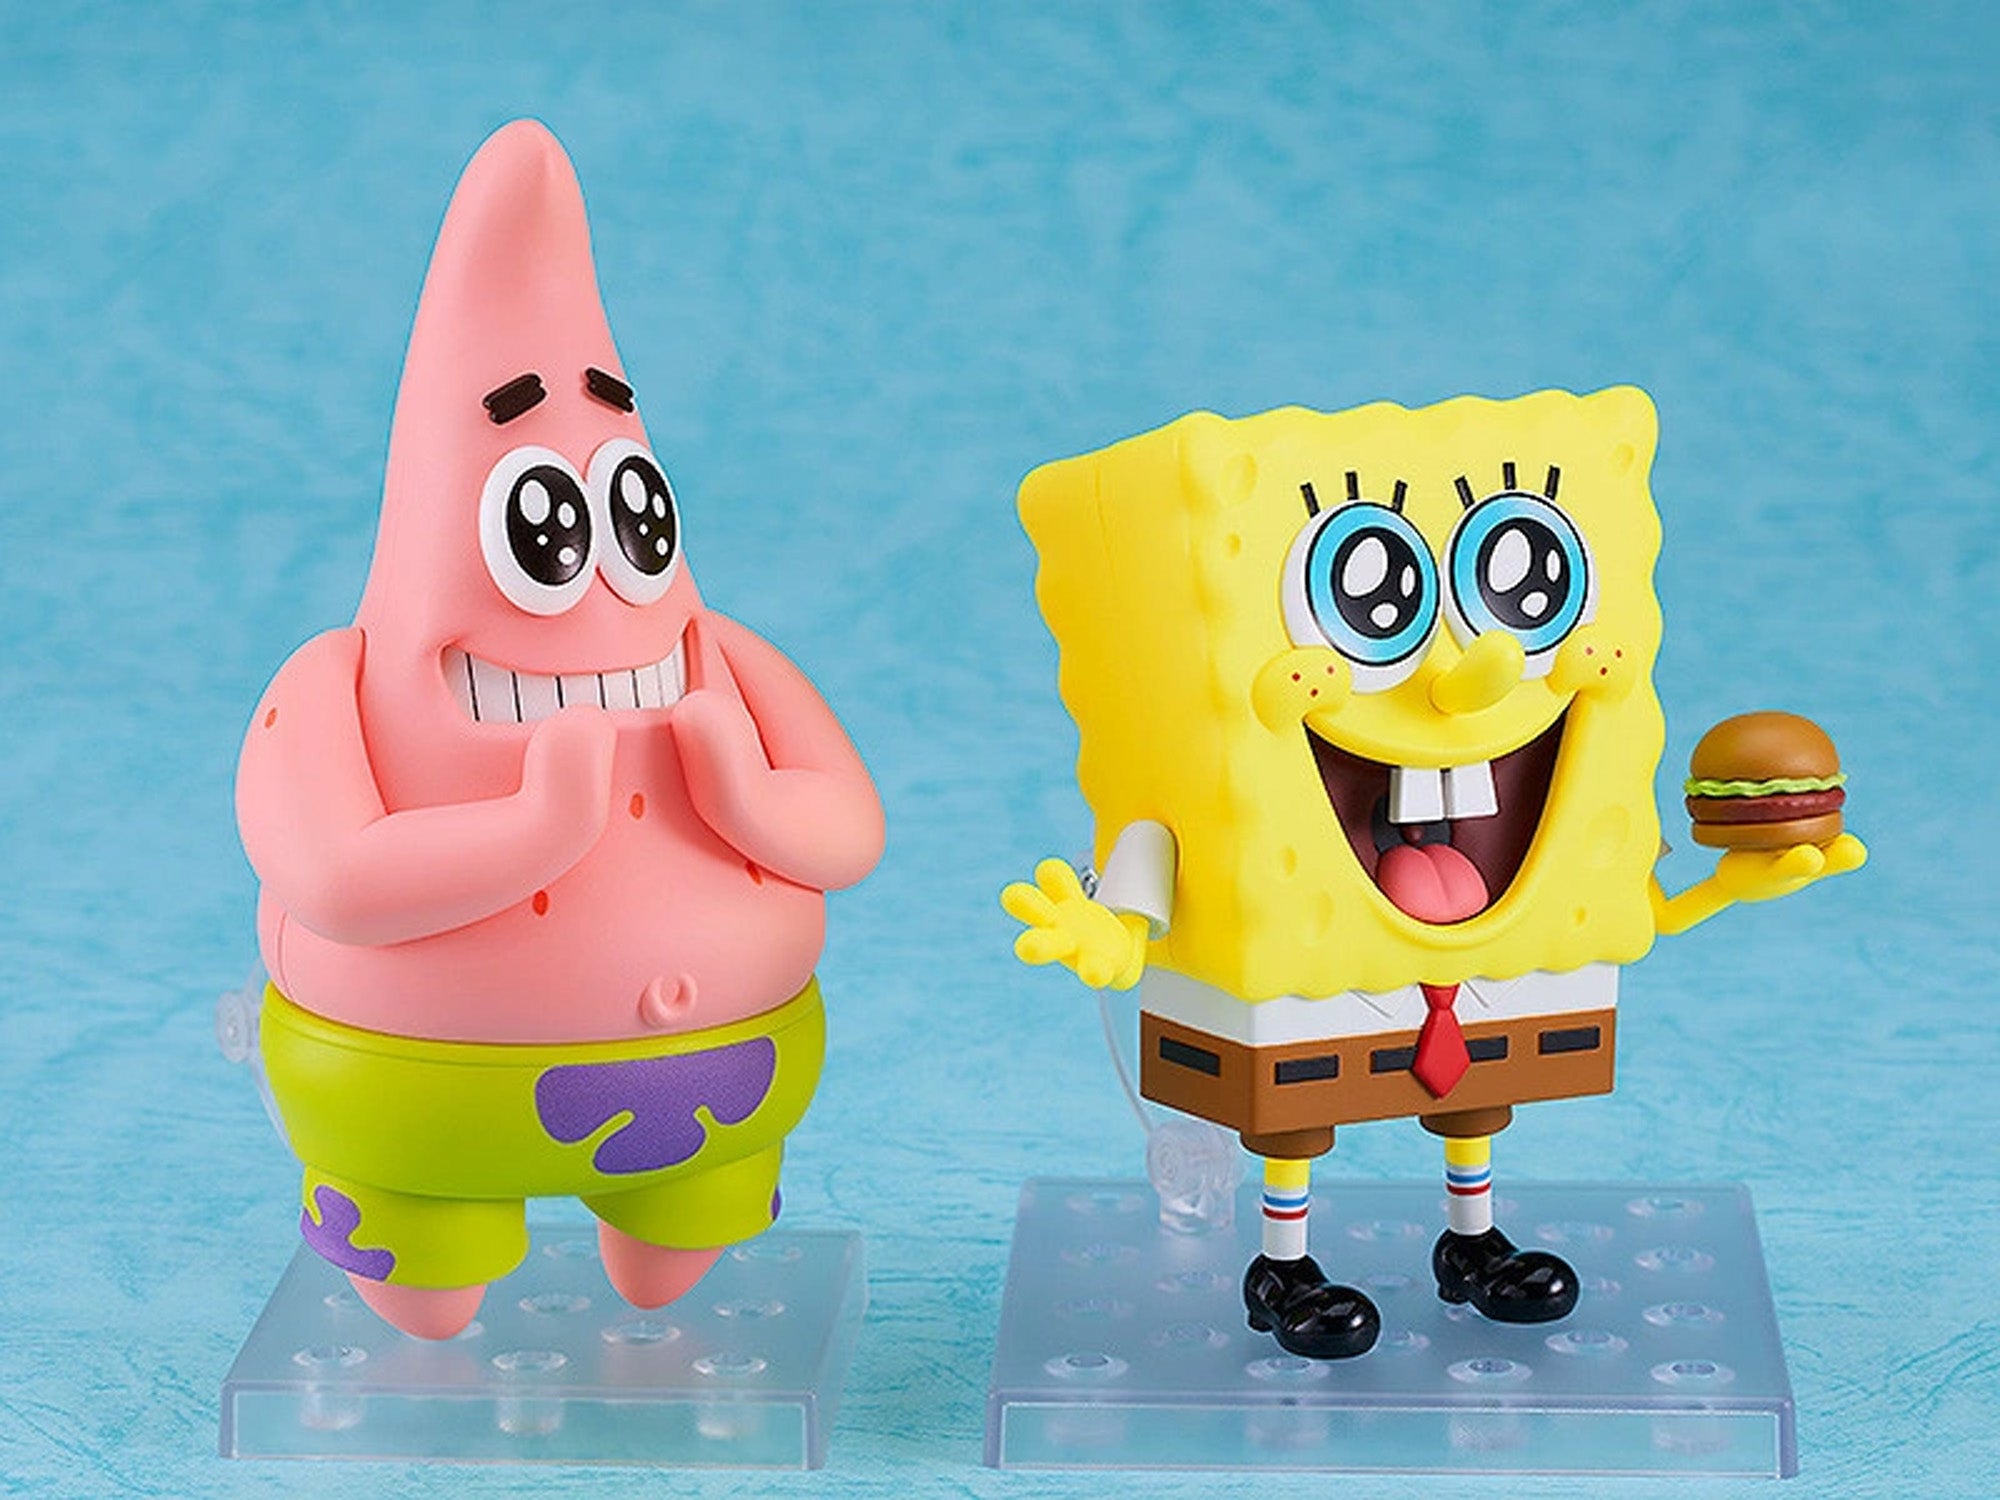 Nendoroid - 2320 - SpongeBob SquarePants - Patrick Star - Marvelous Toys